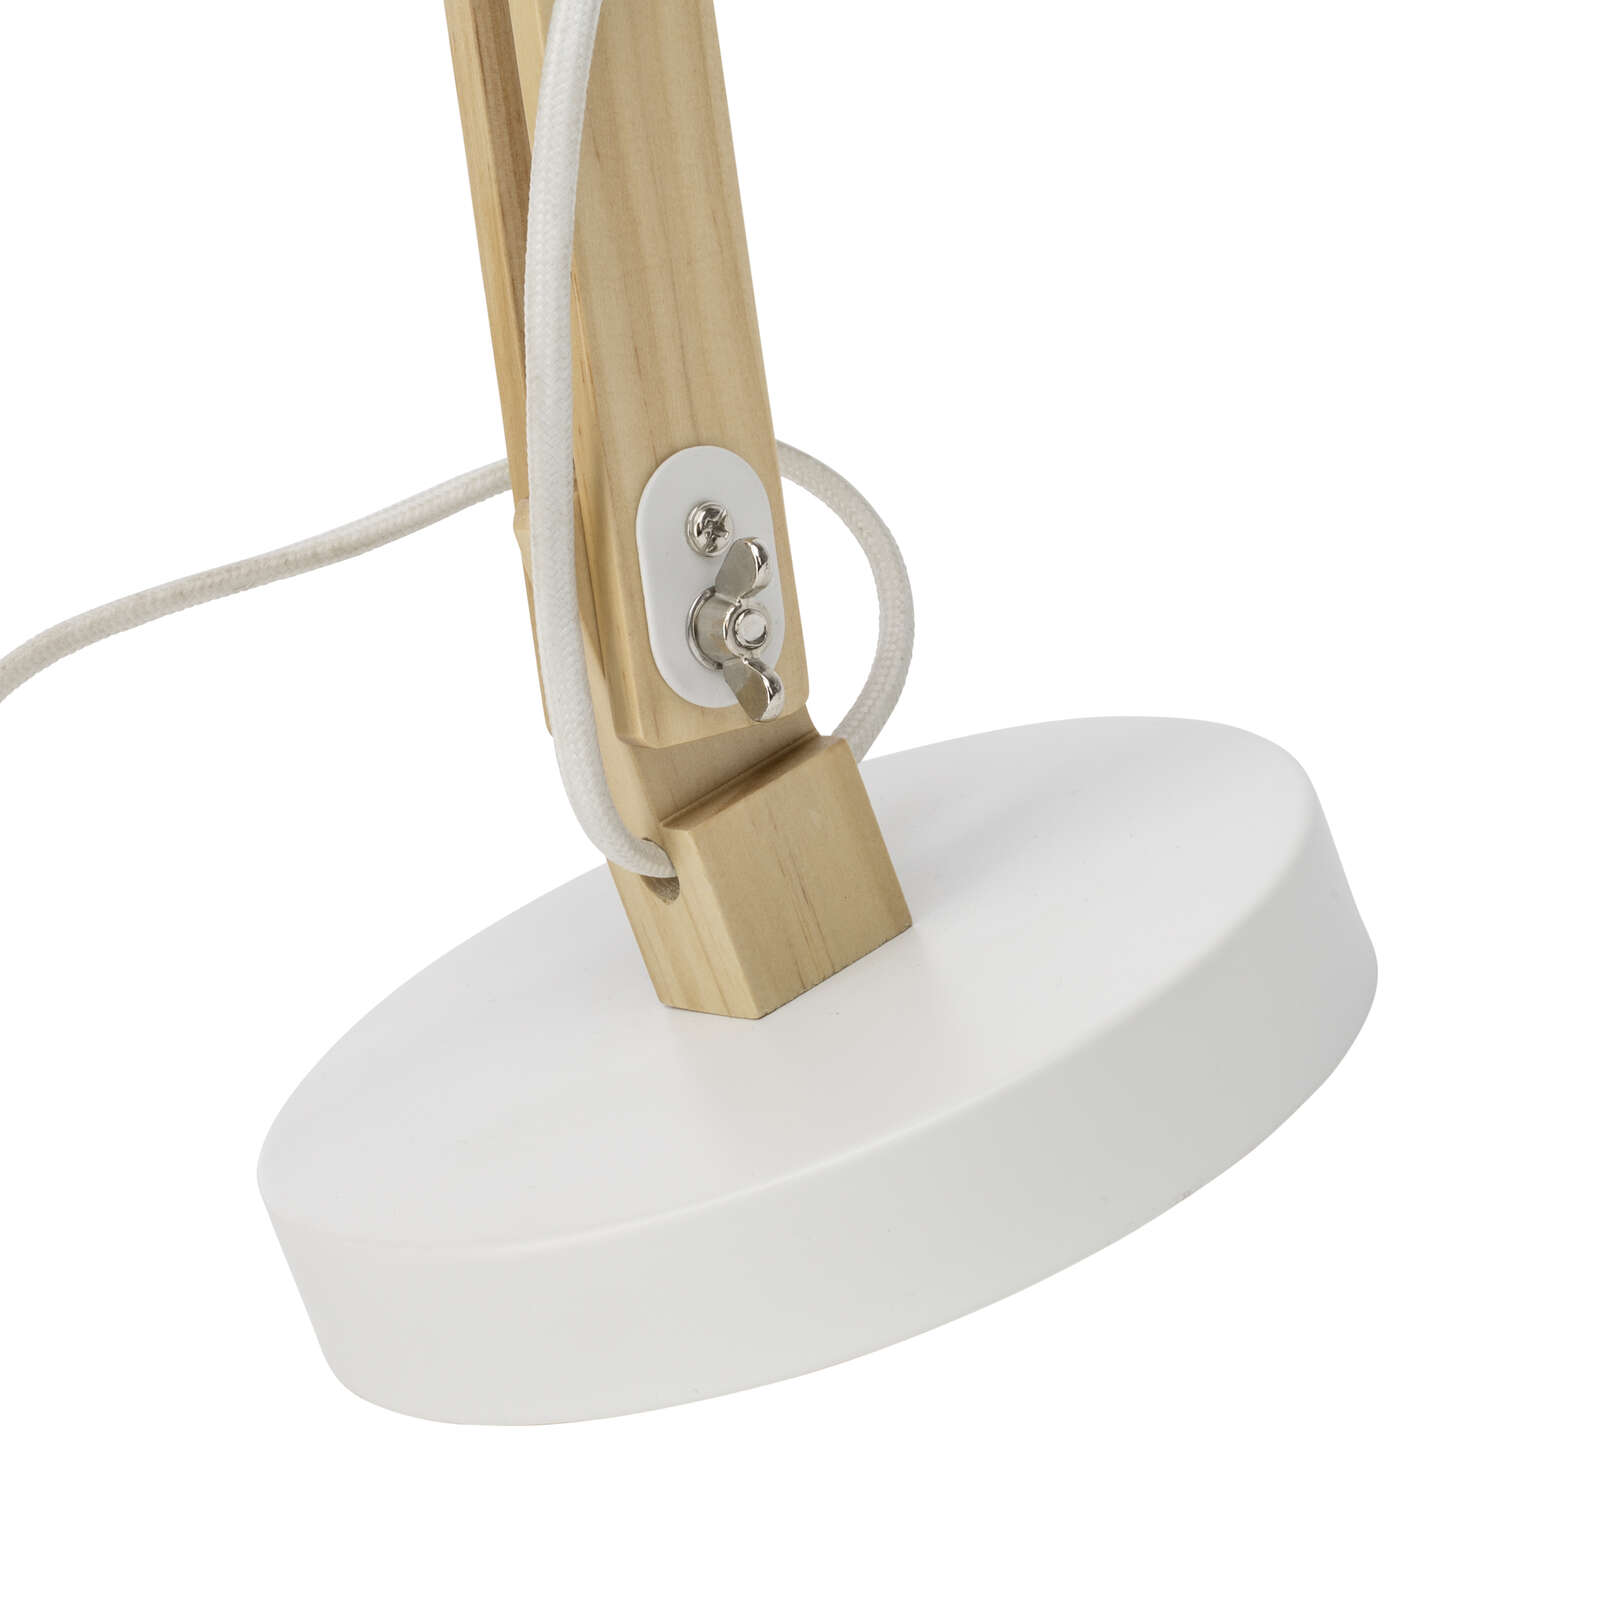             Wooden table lamp - Lisa 1 - White
        